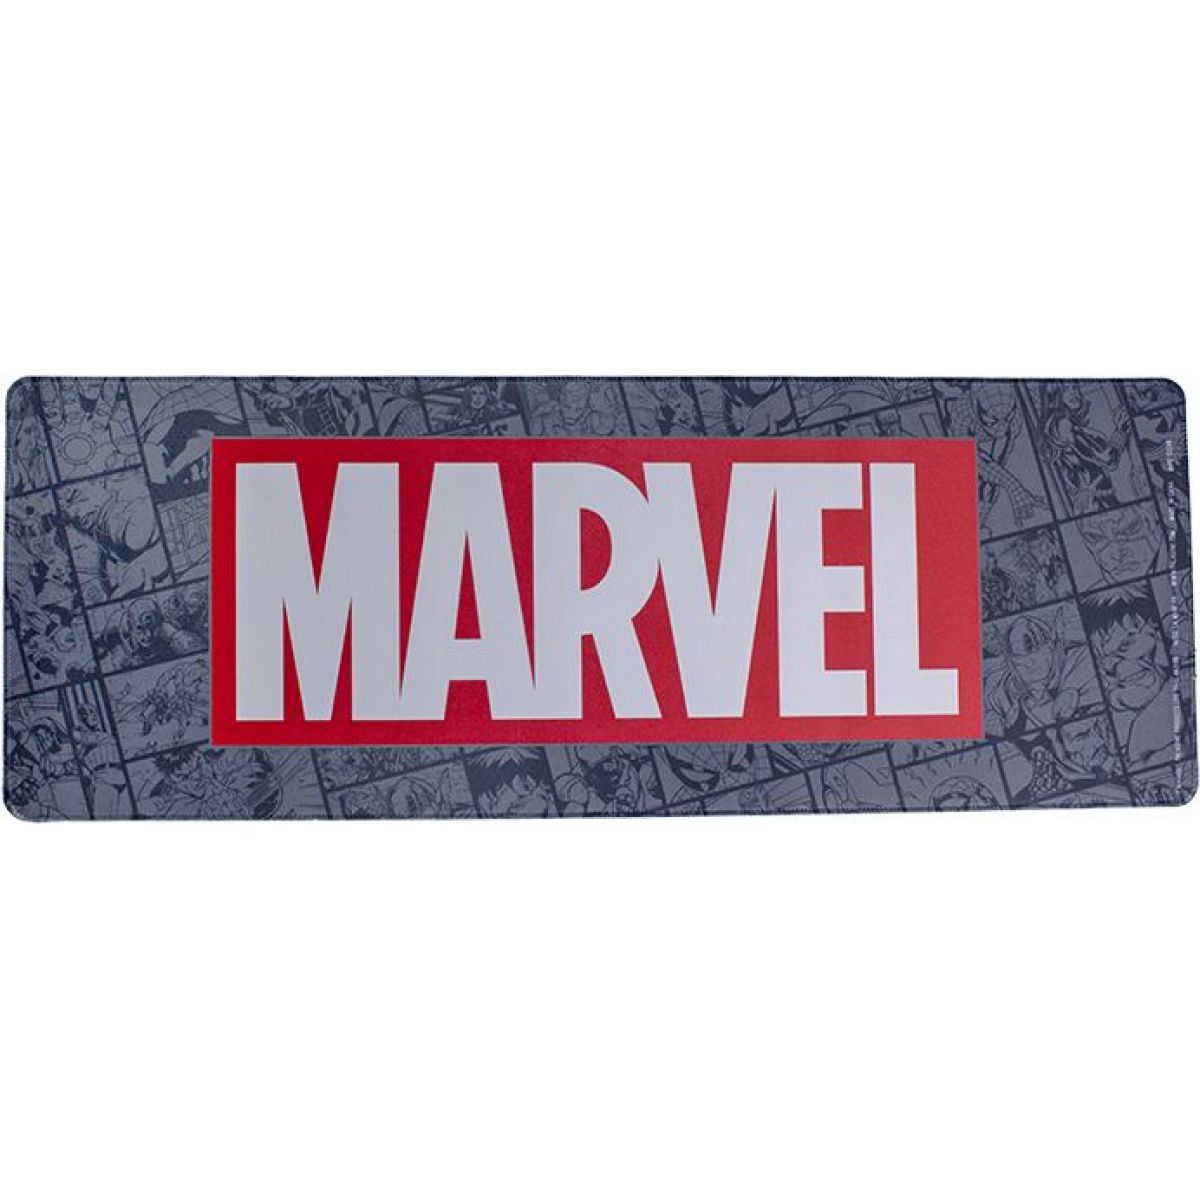 Epee Herná podložka Marvel logo